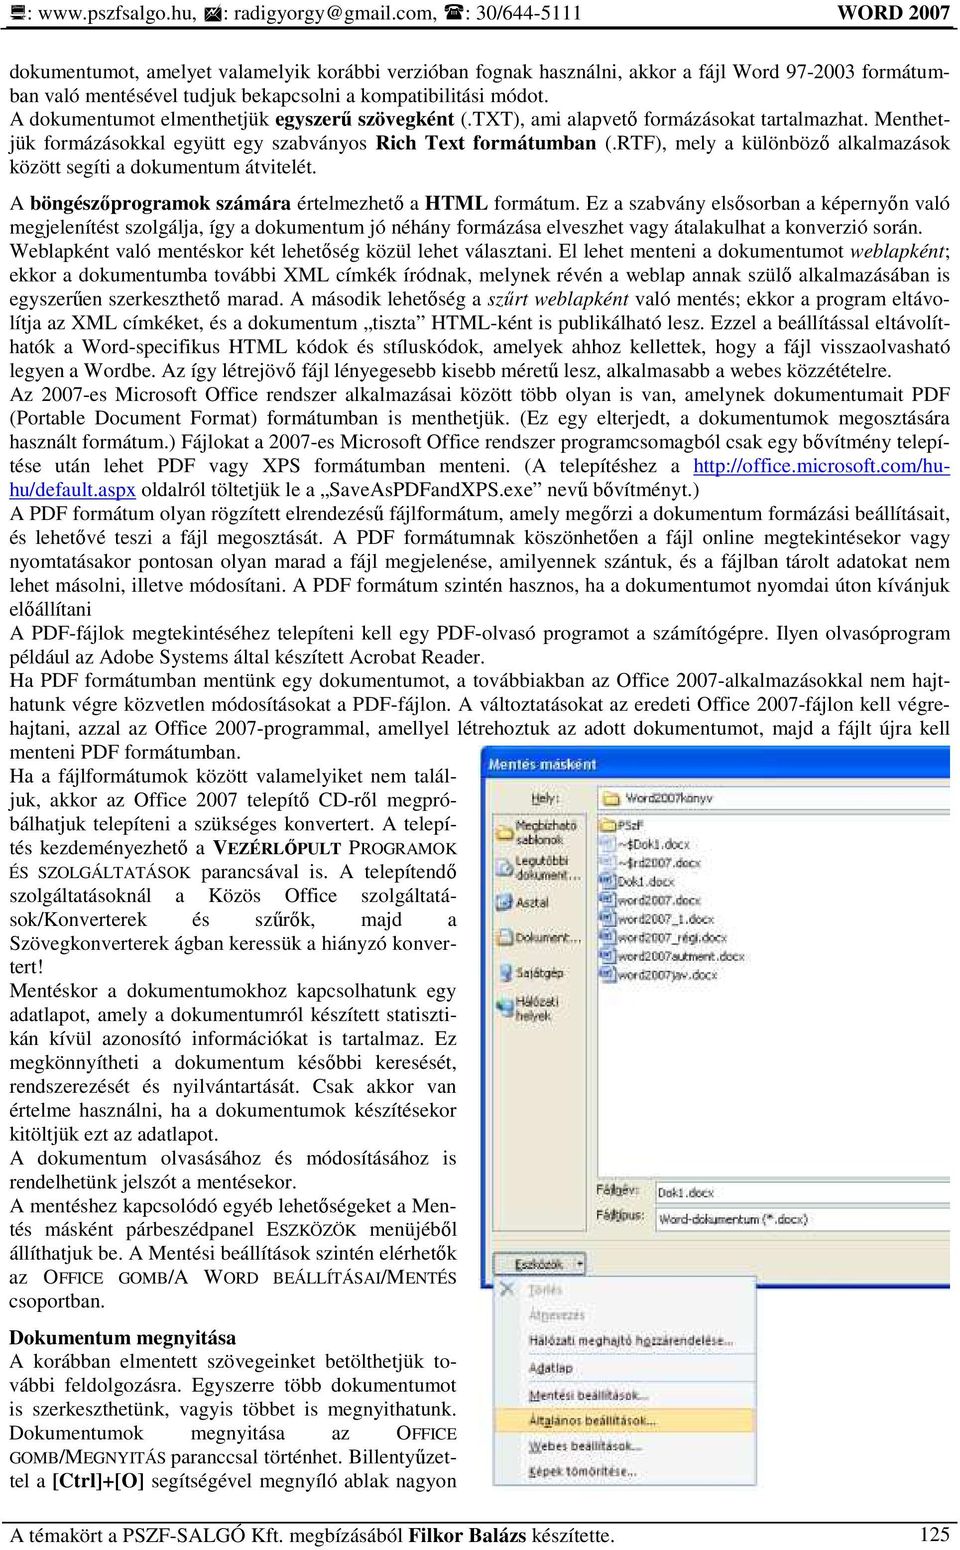 RTF), mely a különbözı alkalmazások között segíti a dokumentum átvitelét. A böngészıprogramok számára értelmezhetı a HTML formátum.